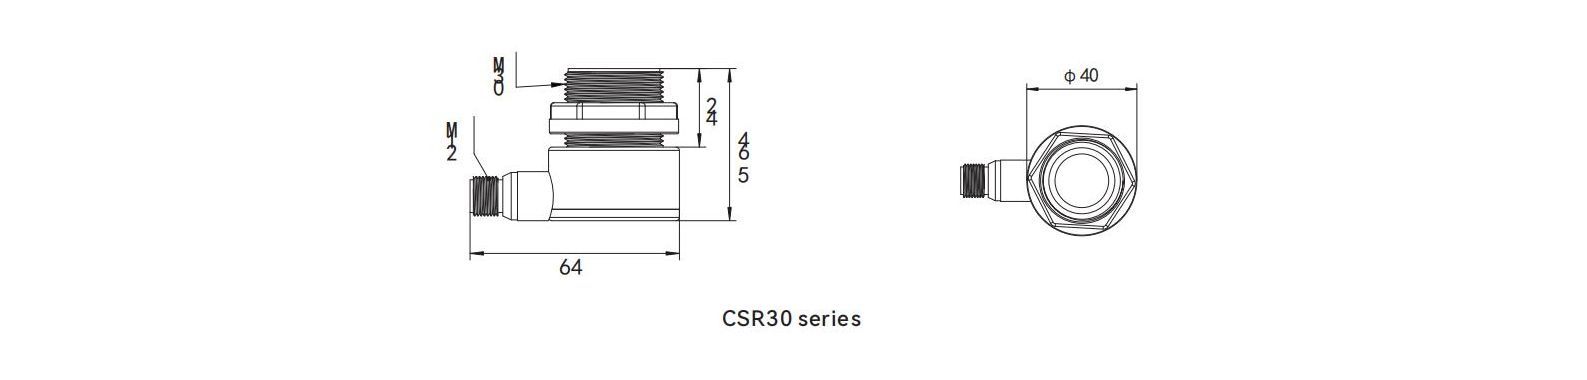 Dimensions of ultrasonic measurement CSR30 series